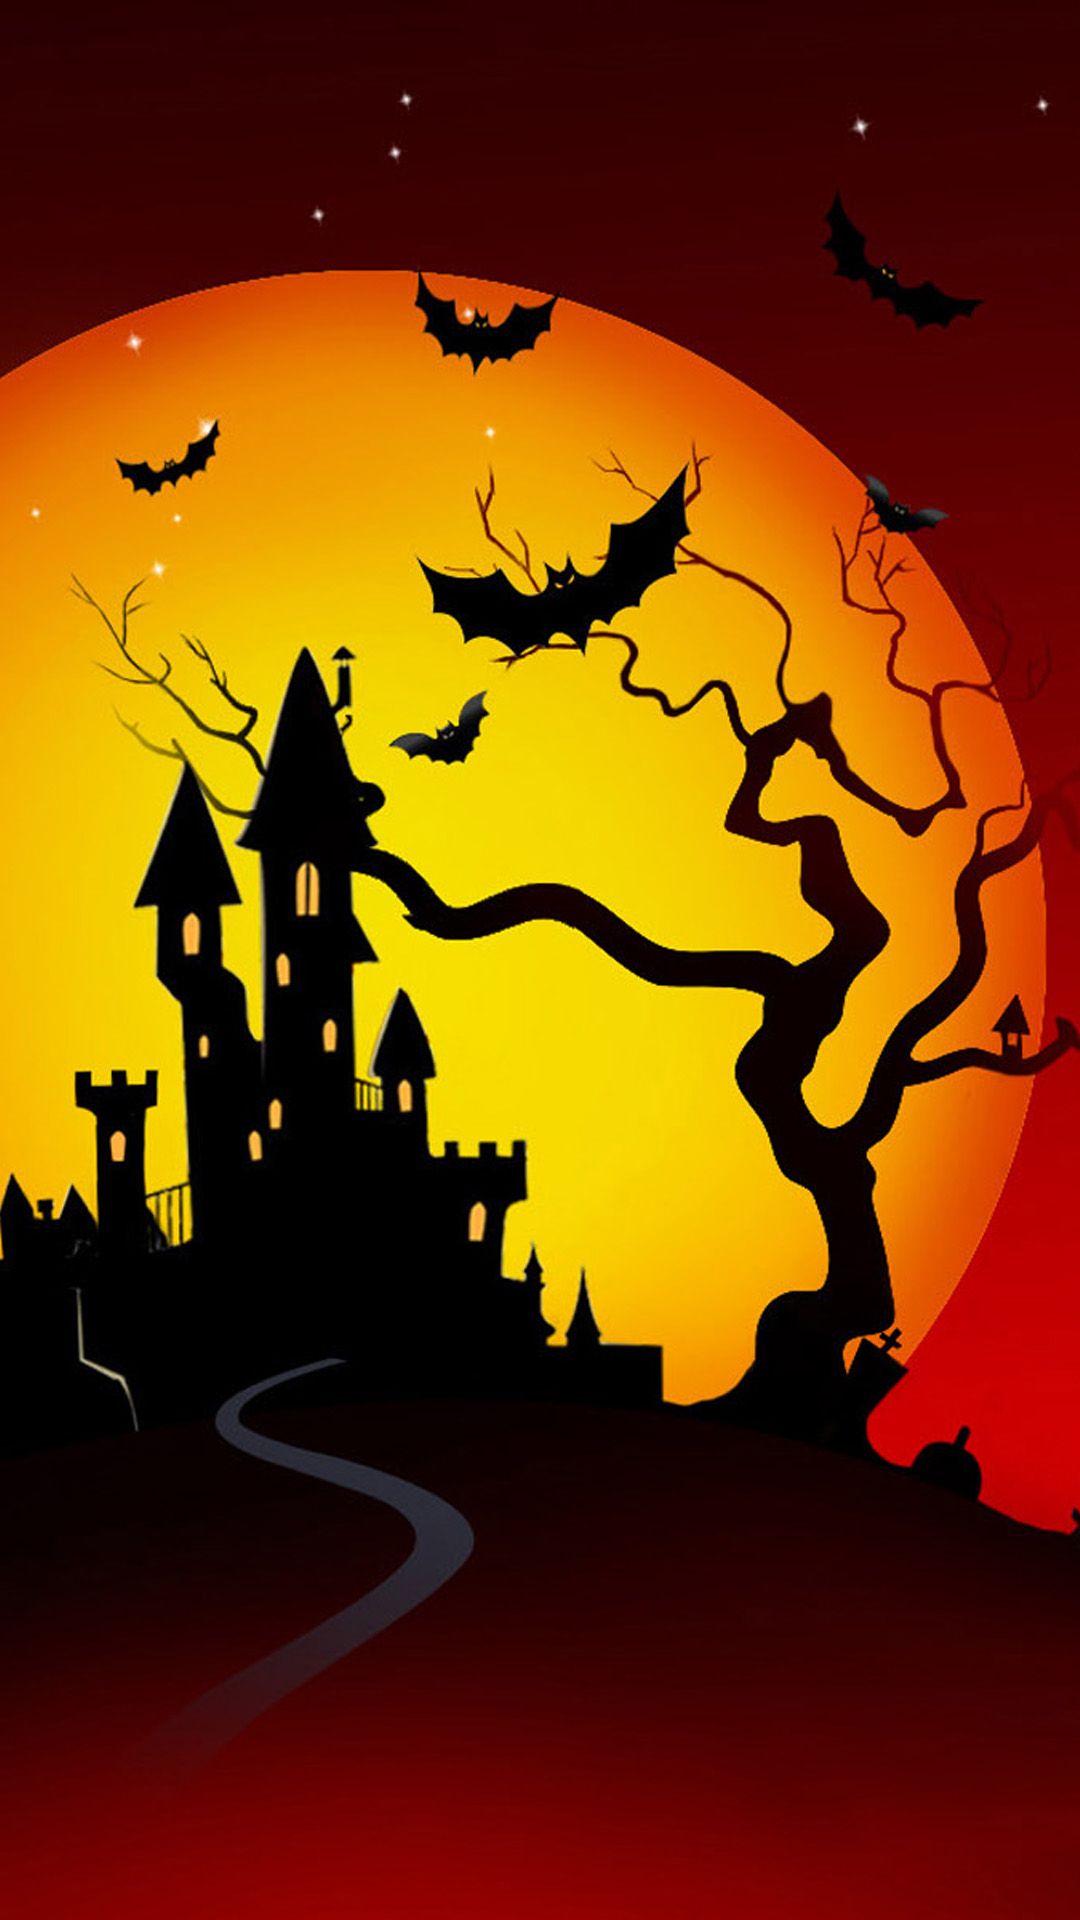 Unduh 74 Halloween Wallpaper Iphone Lock Screen Foto Download - Posts.id